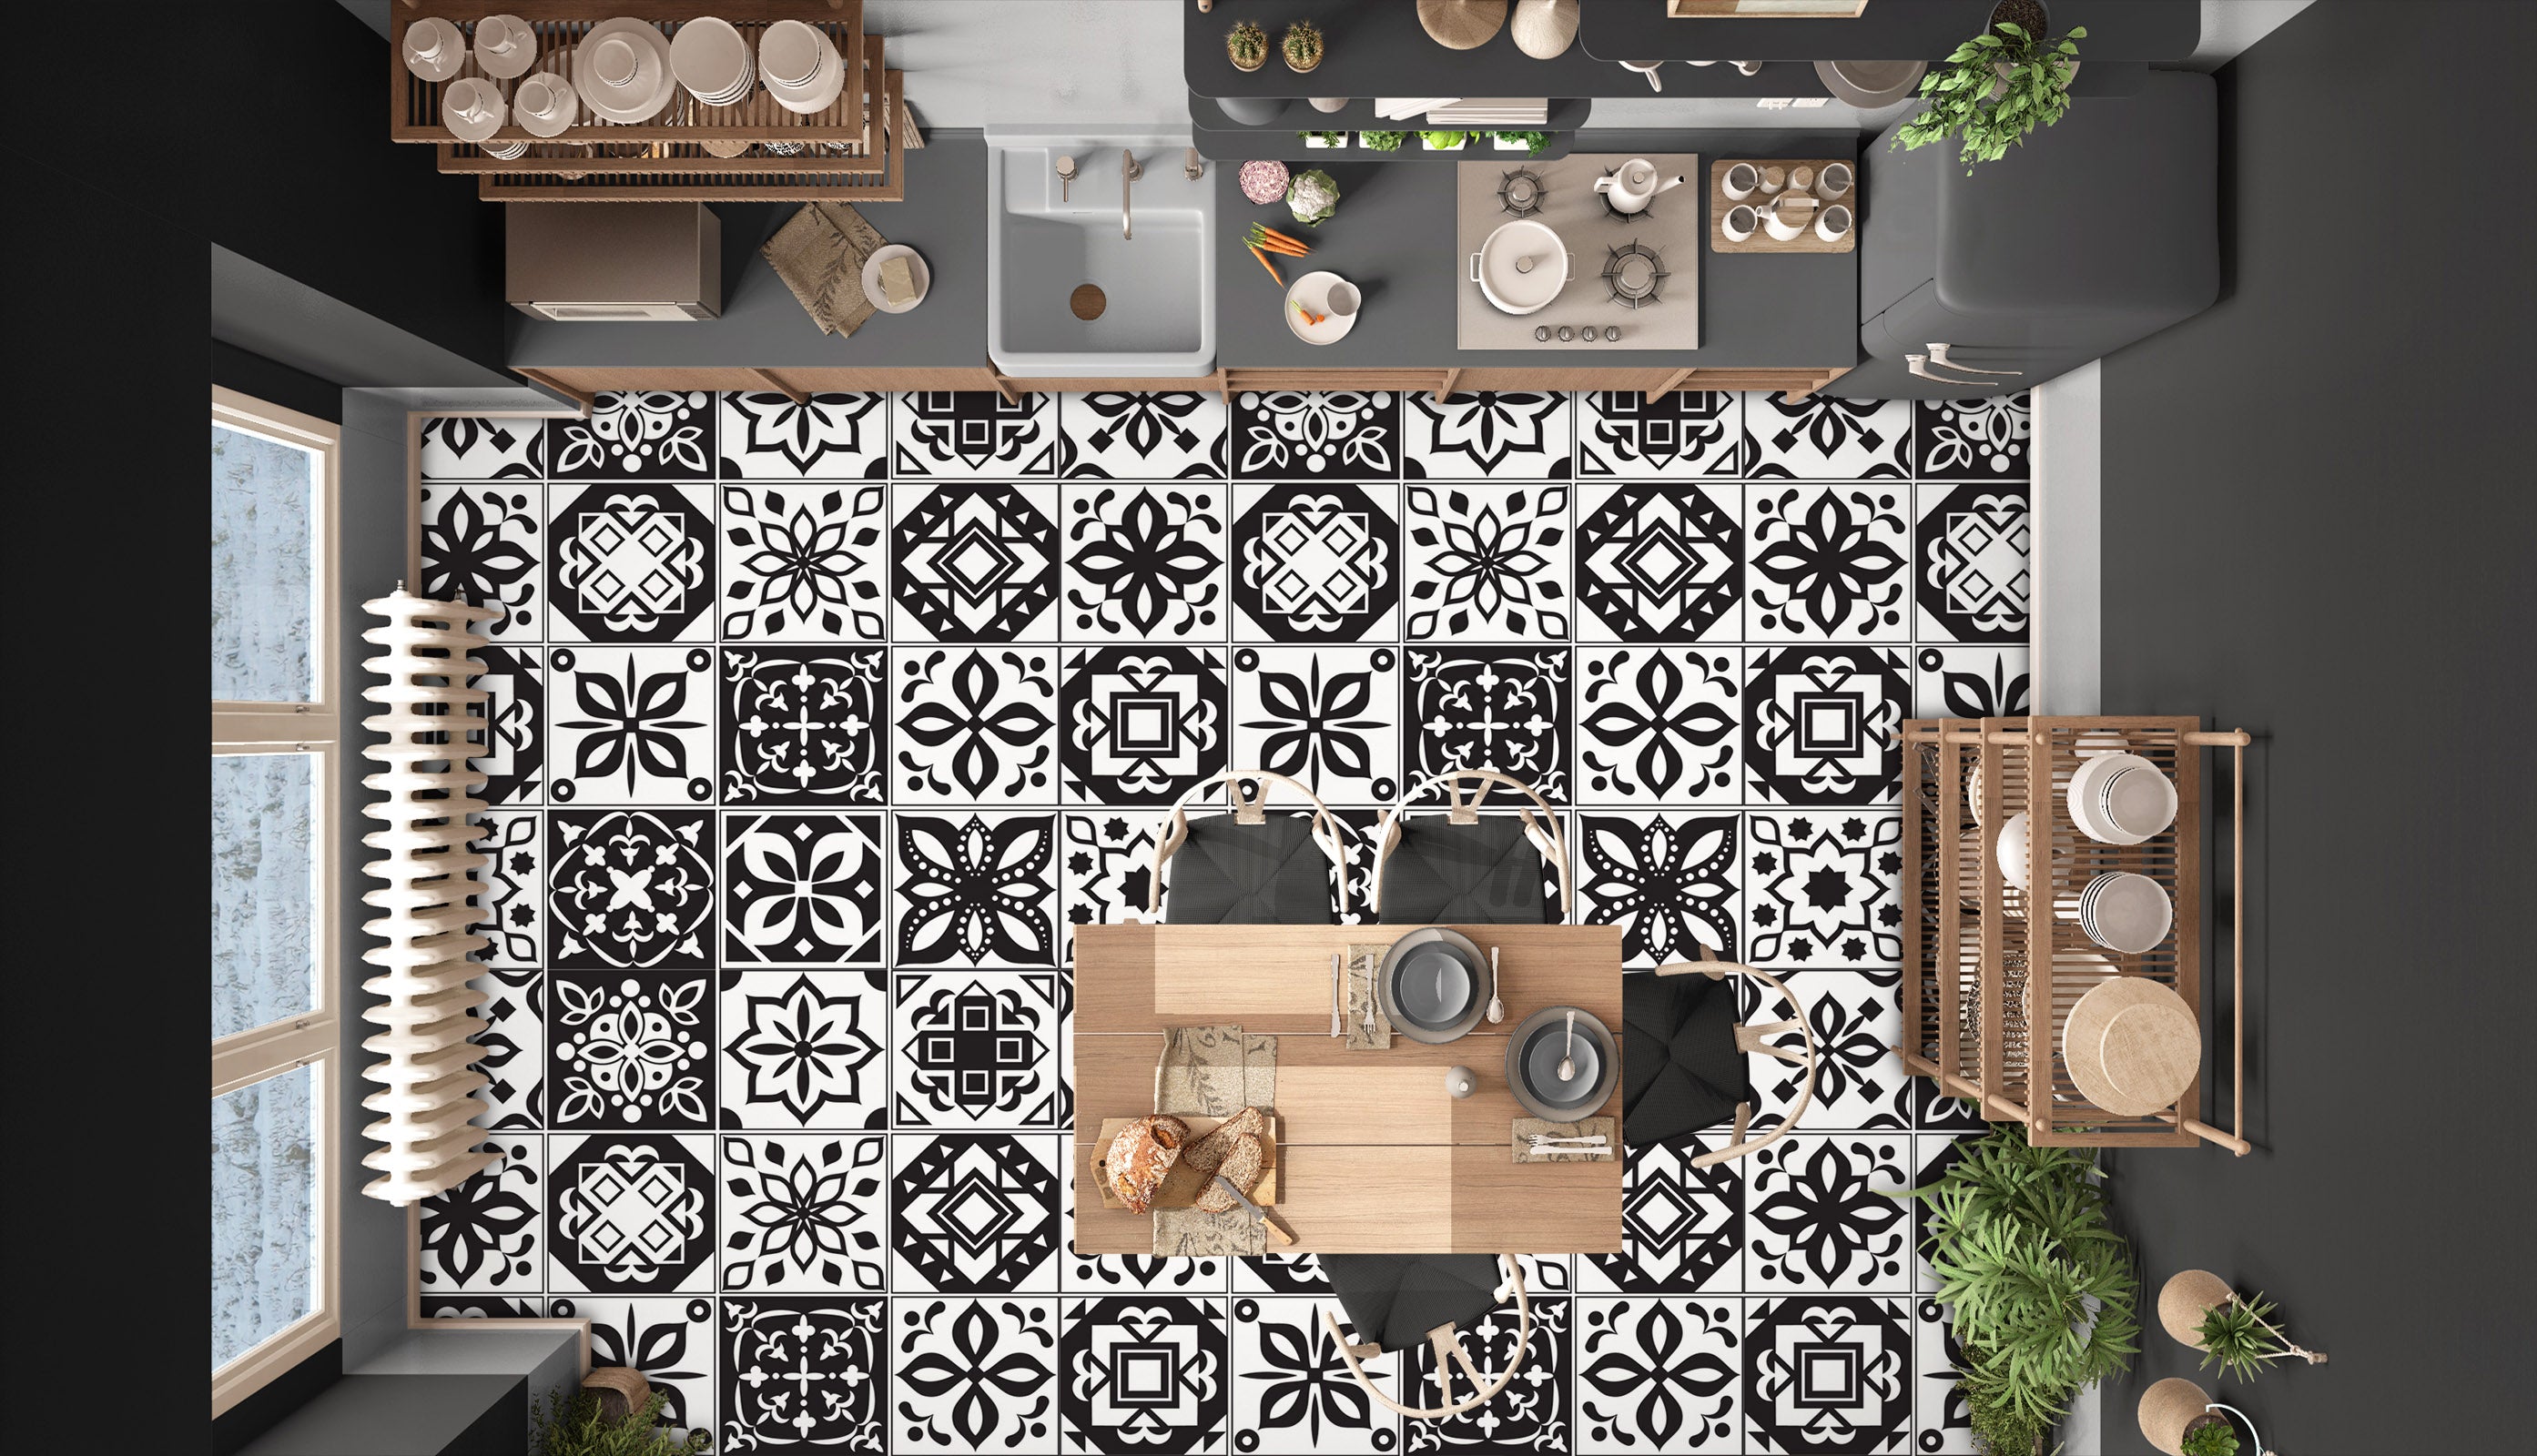 3D Black Delicate Pattern 908 Floor Mural  Wallpaper Murals Rug & Mat Print Epoxy waterproof bath floor